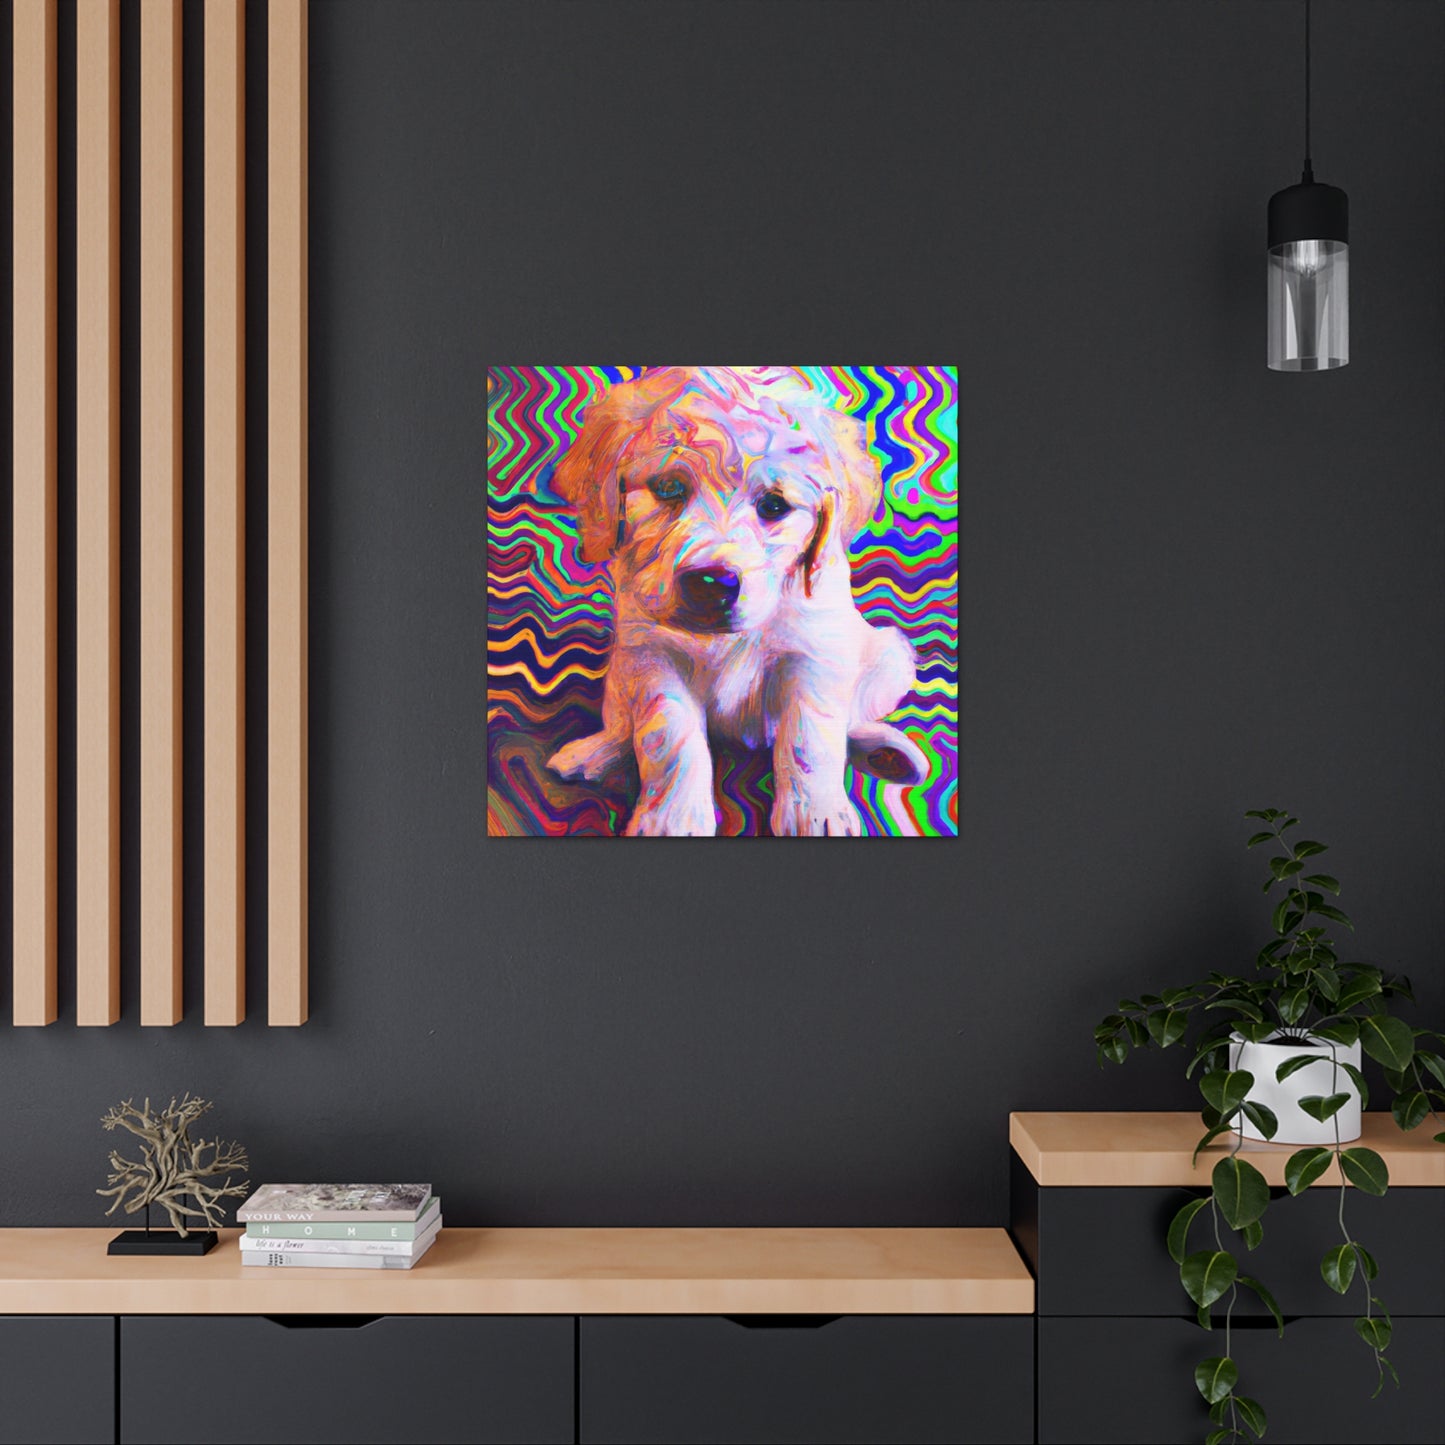 Aldemar von Hammerstein Golden Retriever Puppy - Canvas